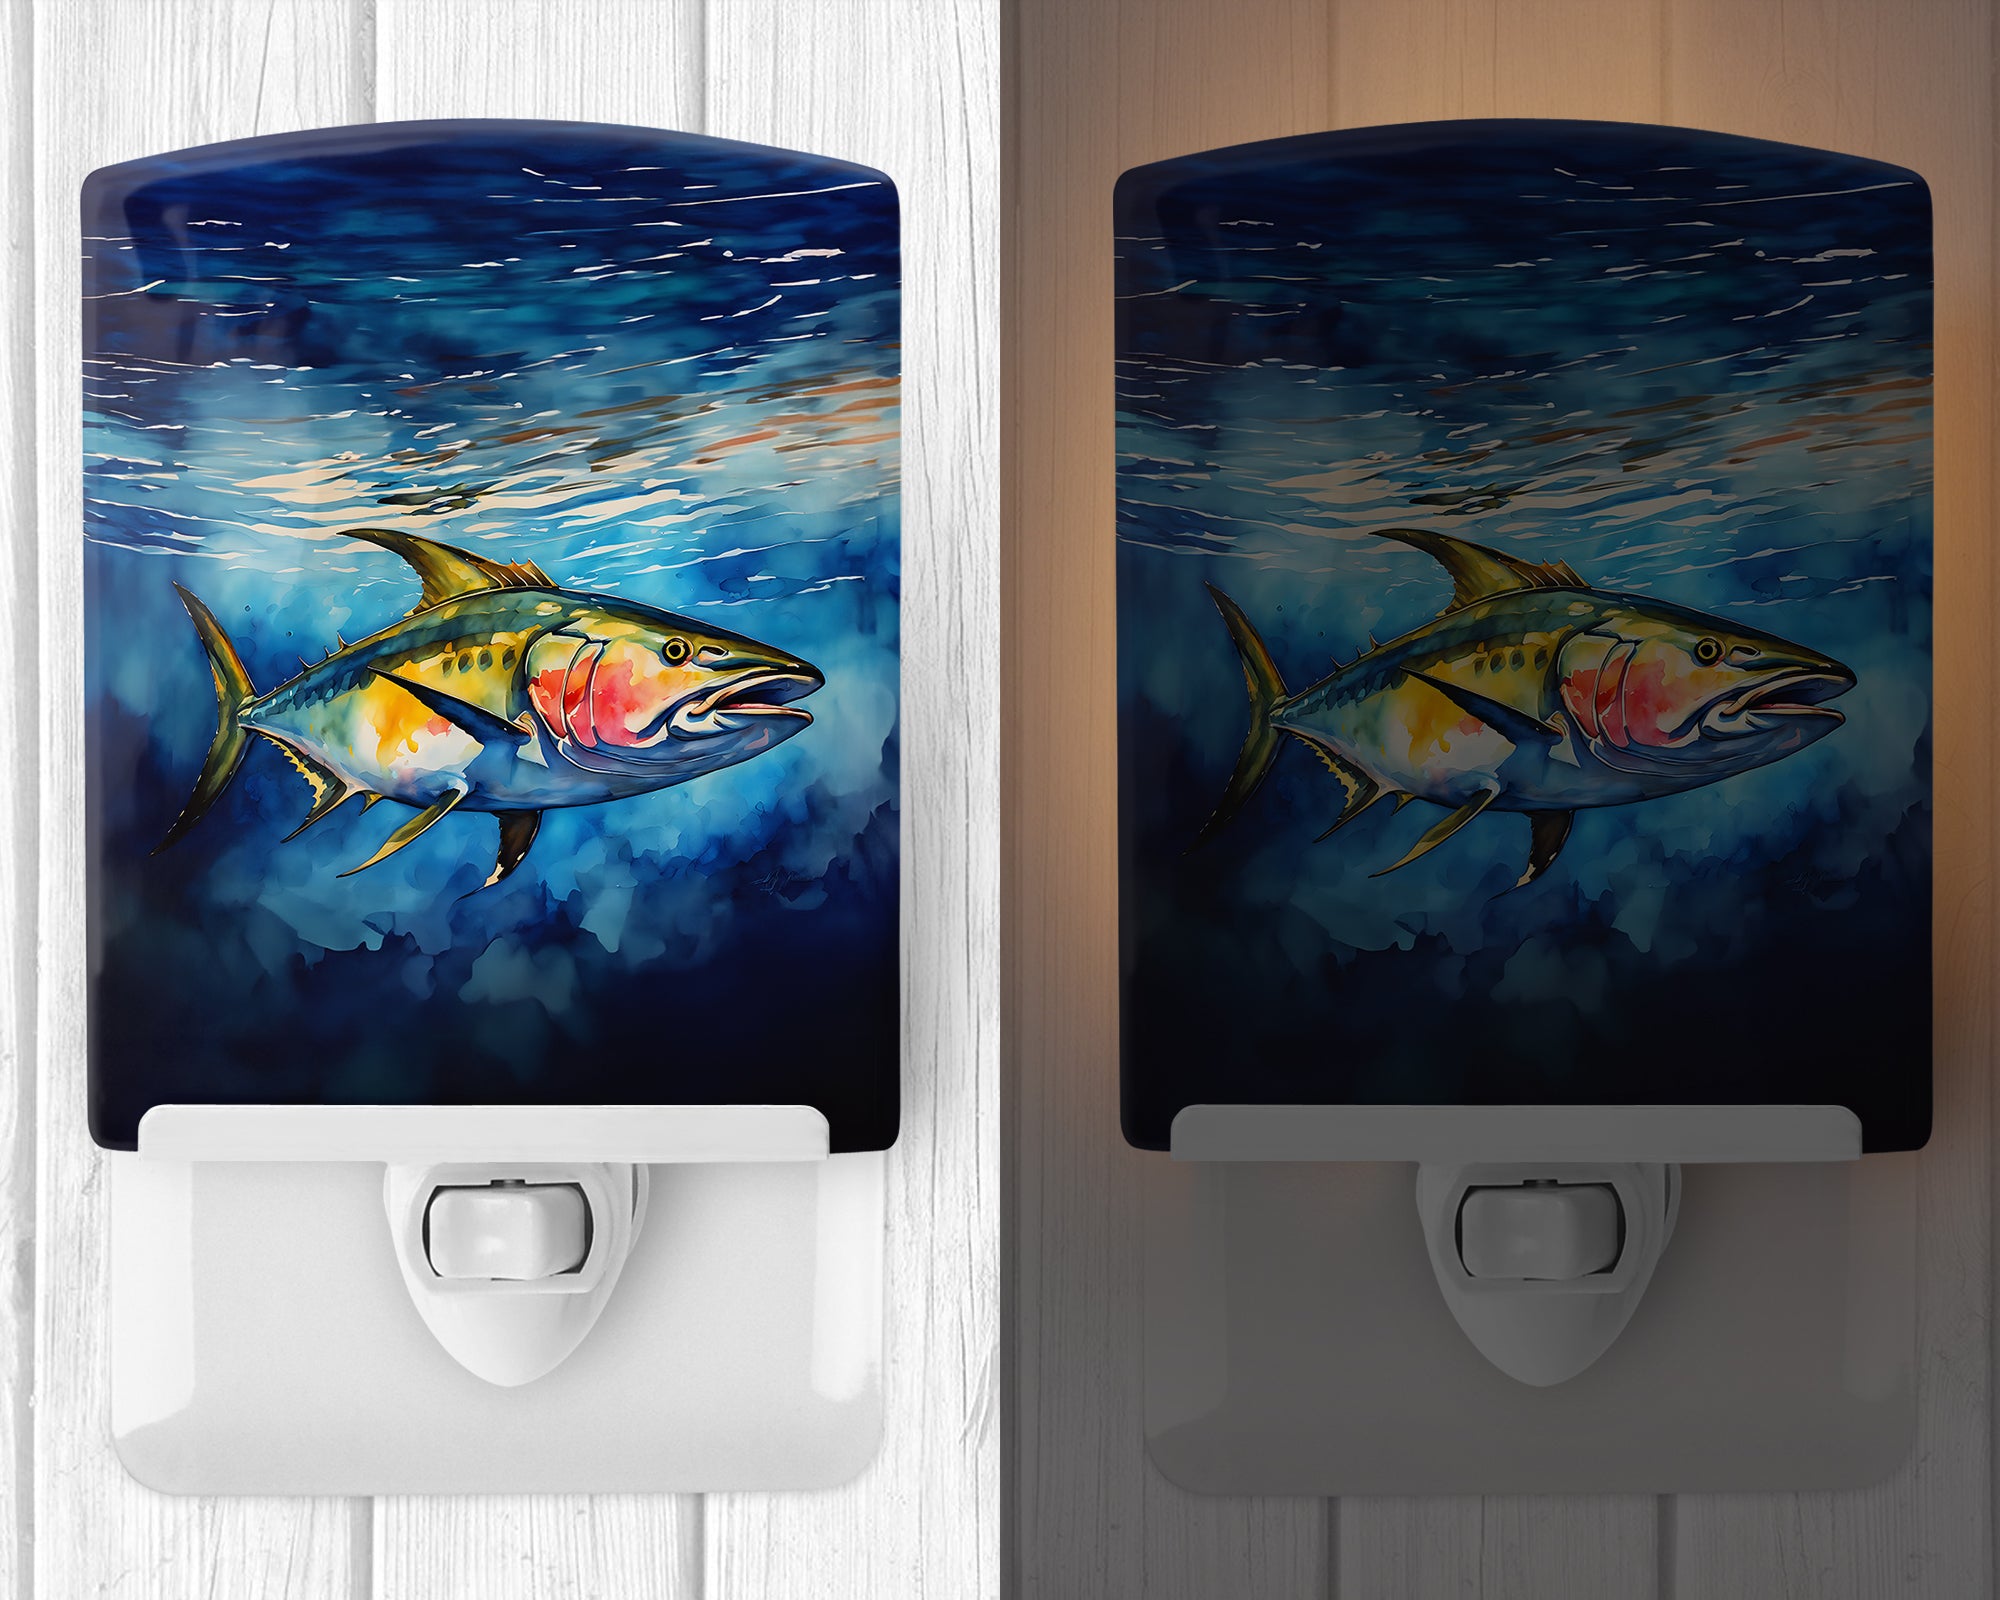 Buy this Yellowfin Tuna Ceramic Night Light